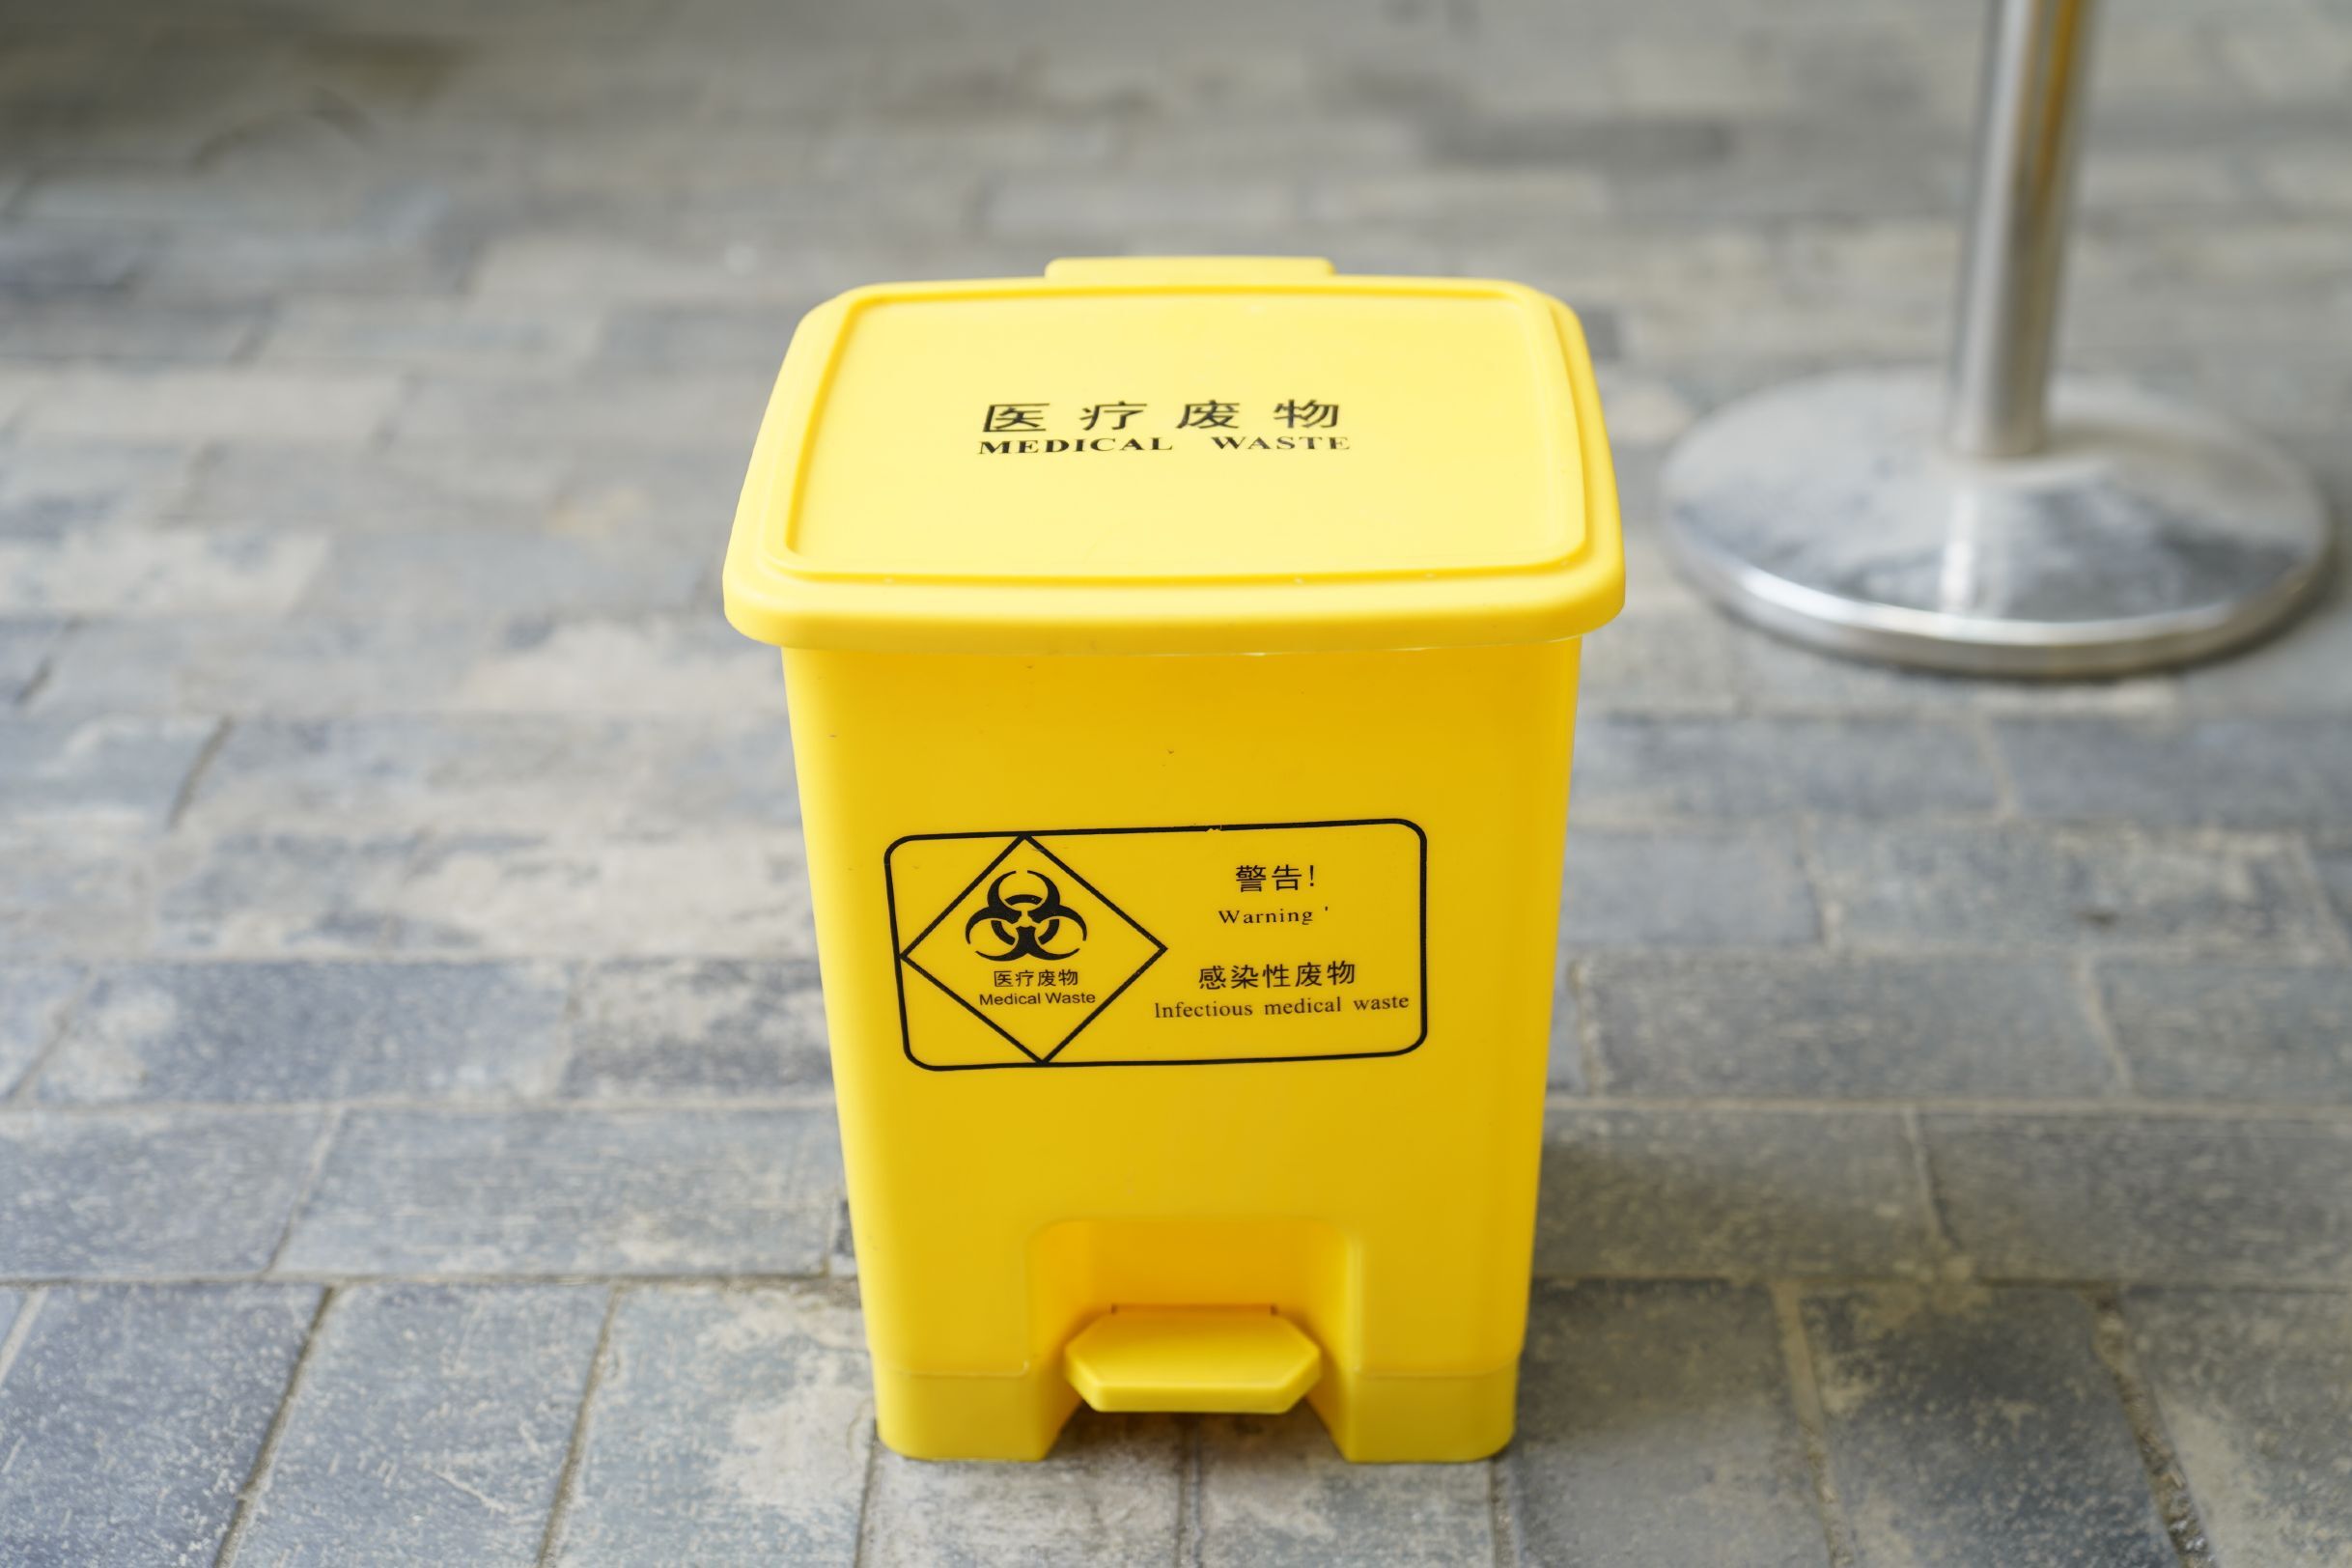 拉萨脚踏式医疗垃圾桶生产厂家 欢迎来电咨询